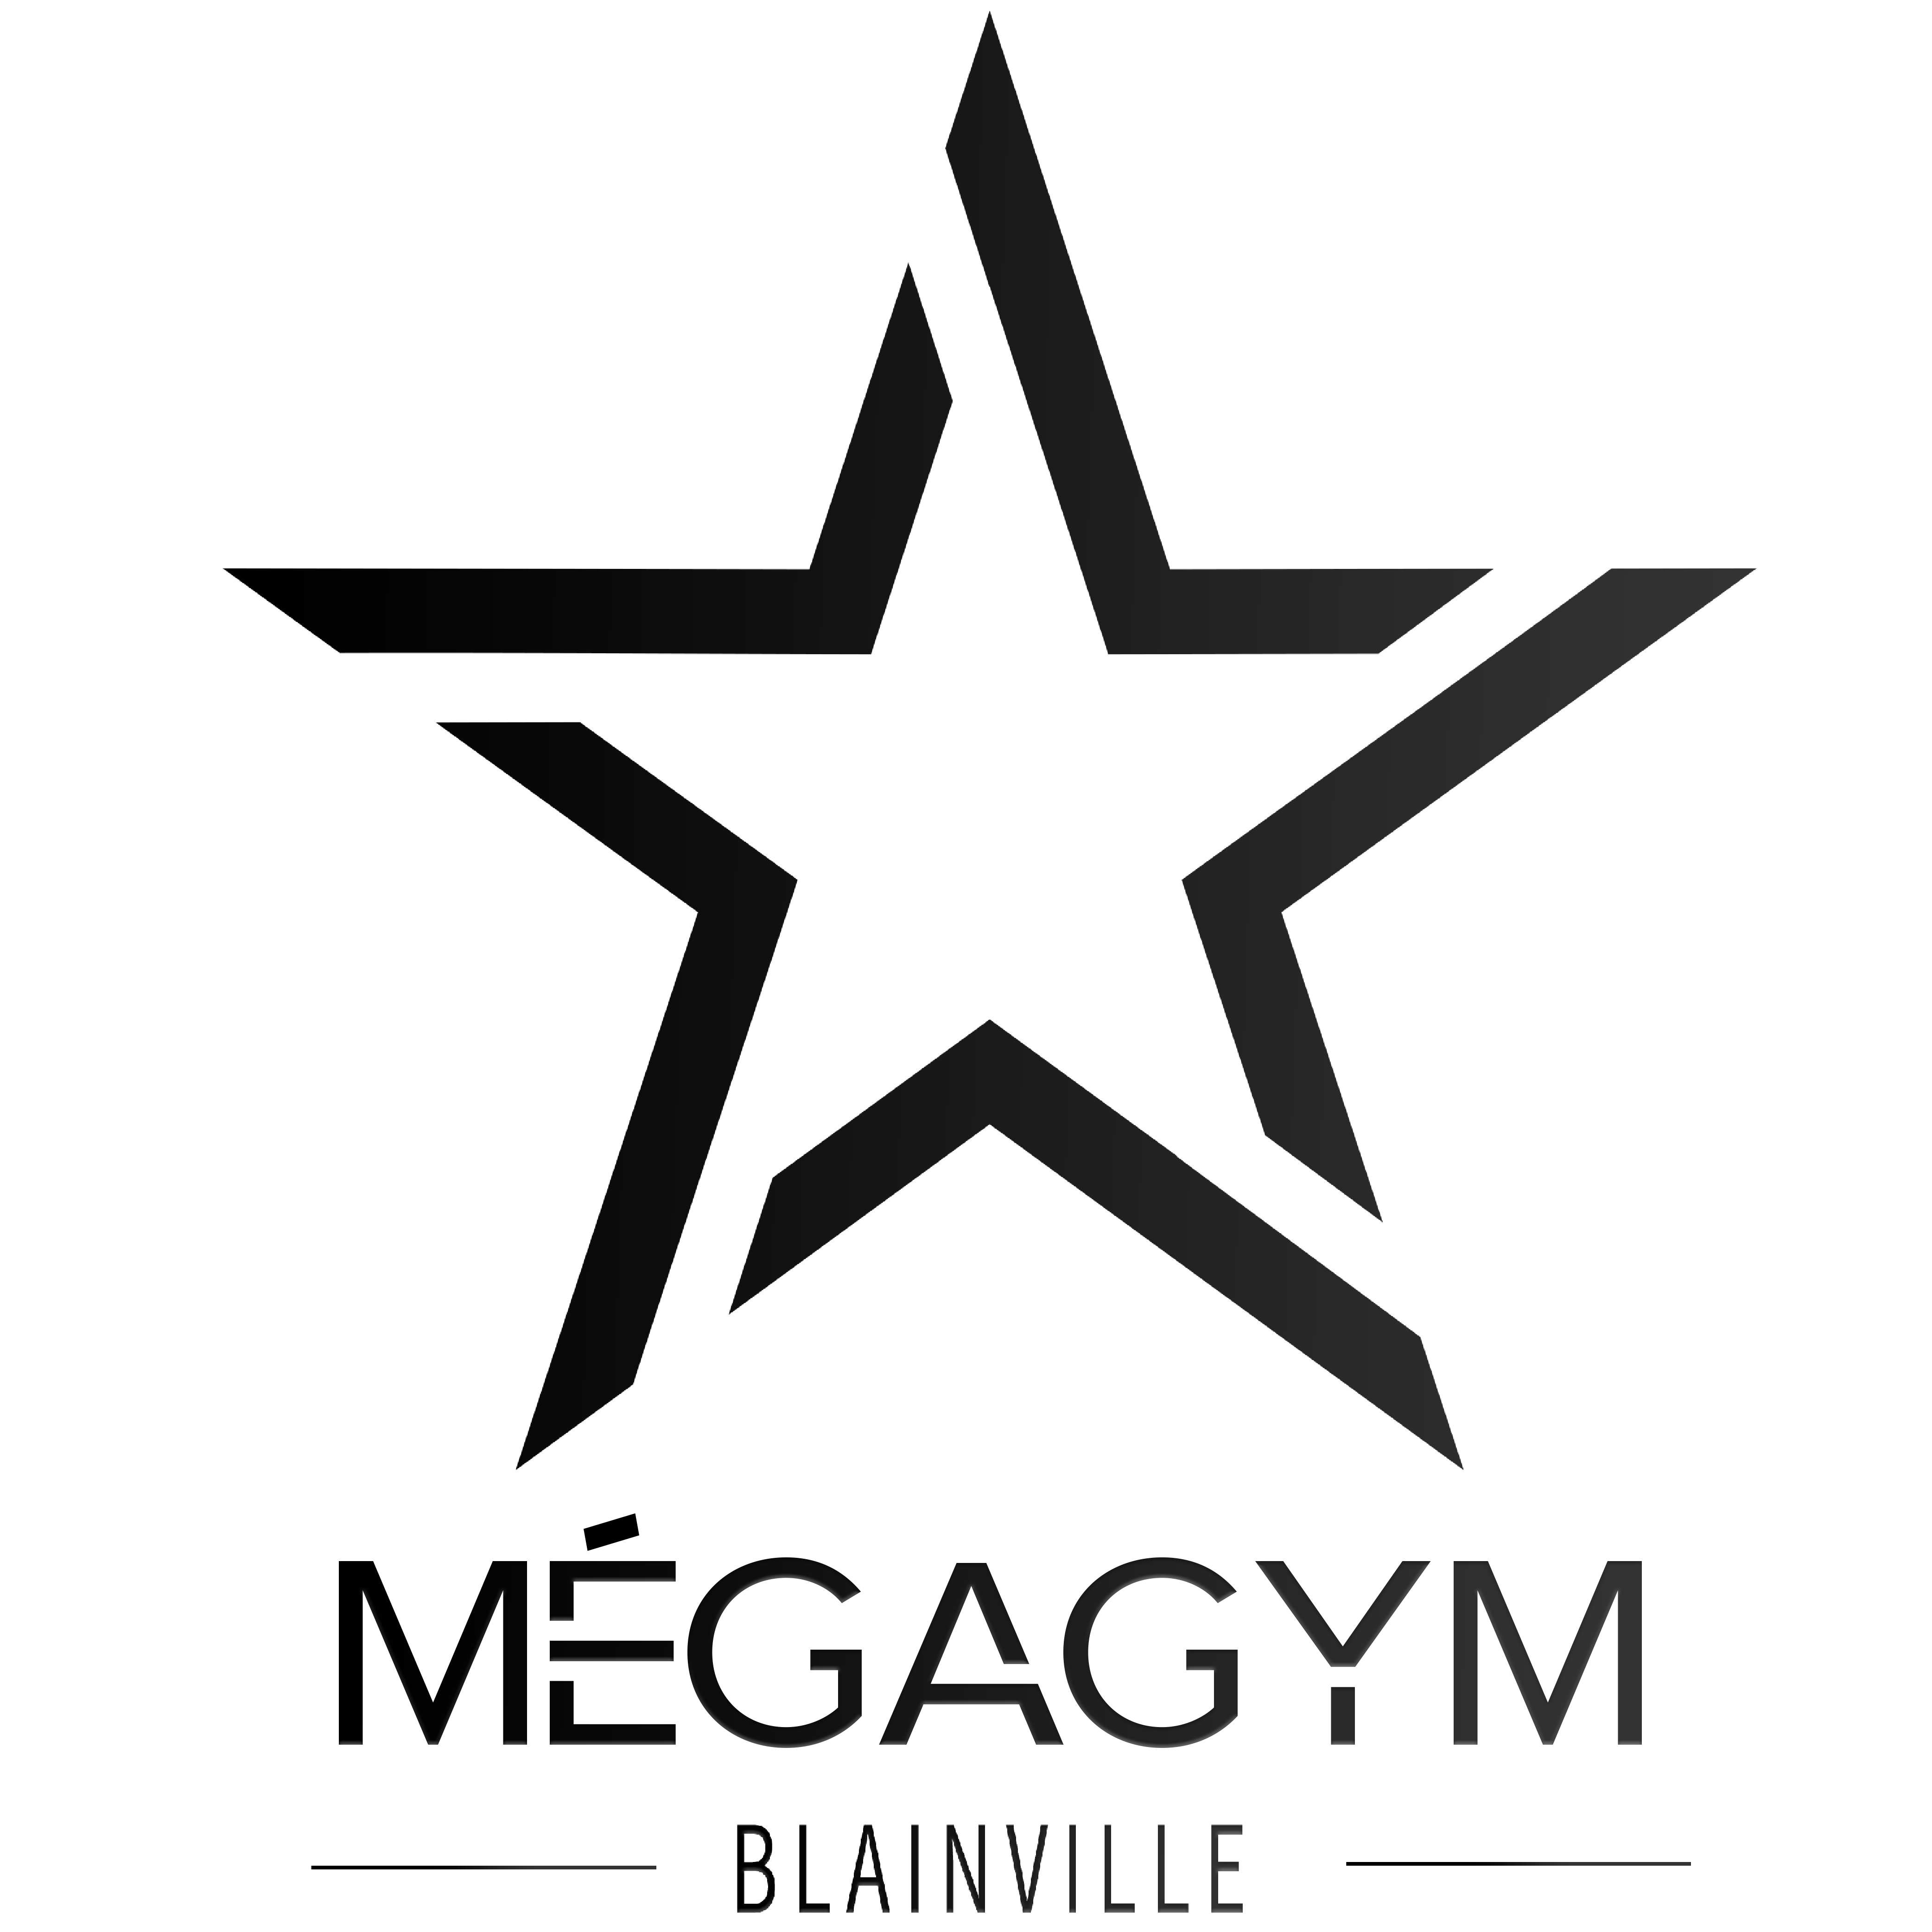 Méga-Gym Blainville